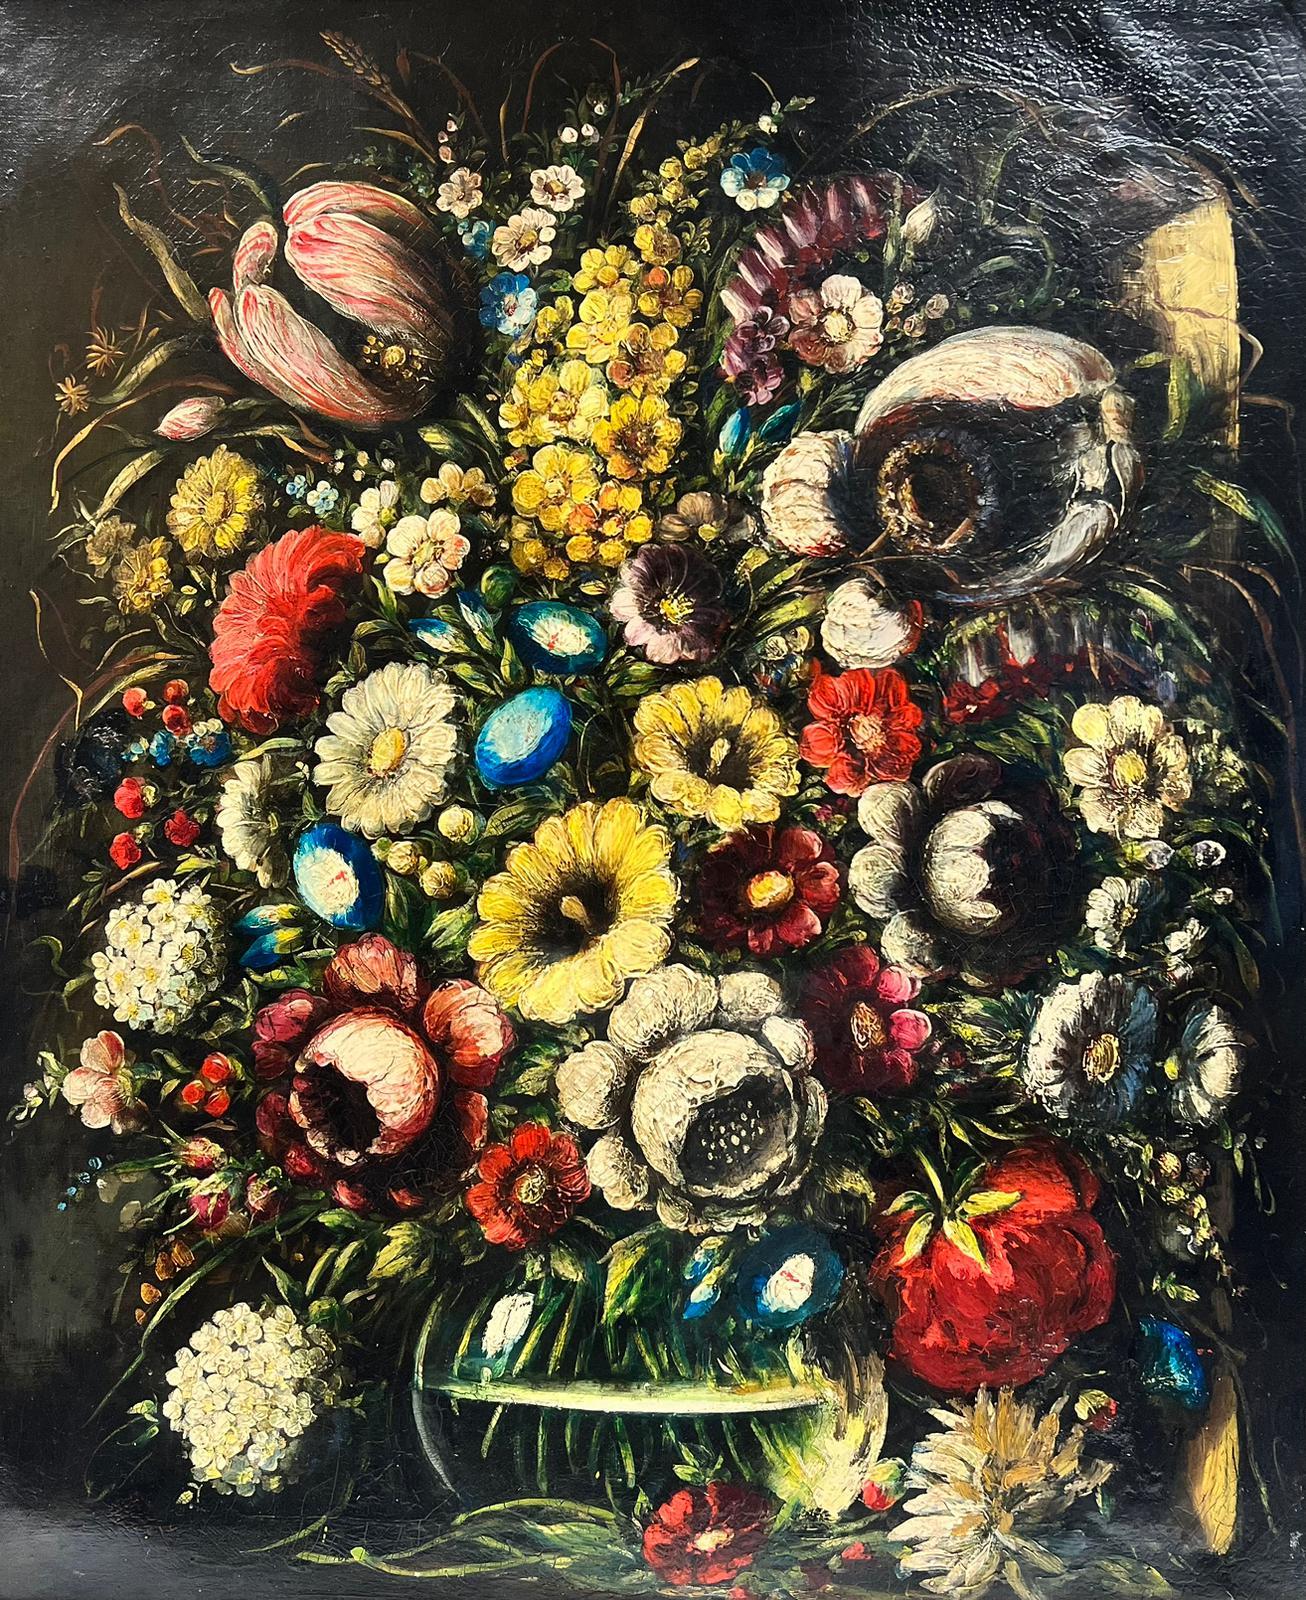 Klassische Stillleben-Blumenschale aus Glas, Öl auf Leinwand, Altmeisterstil – Painting von German School